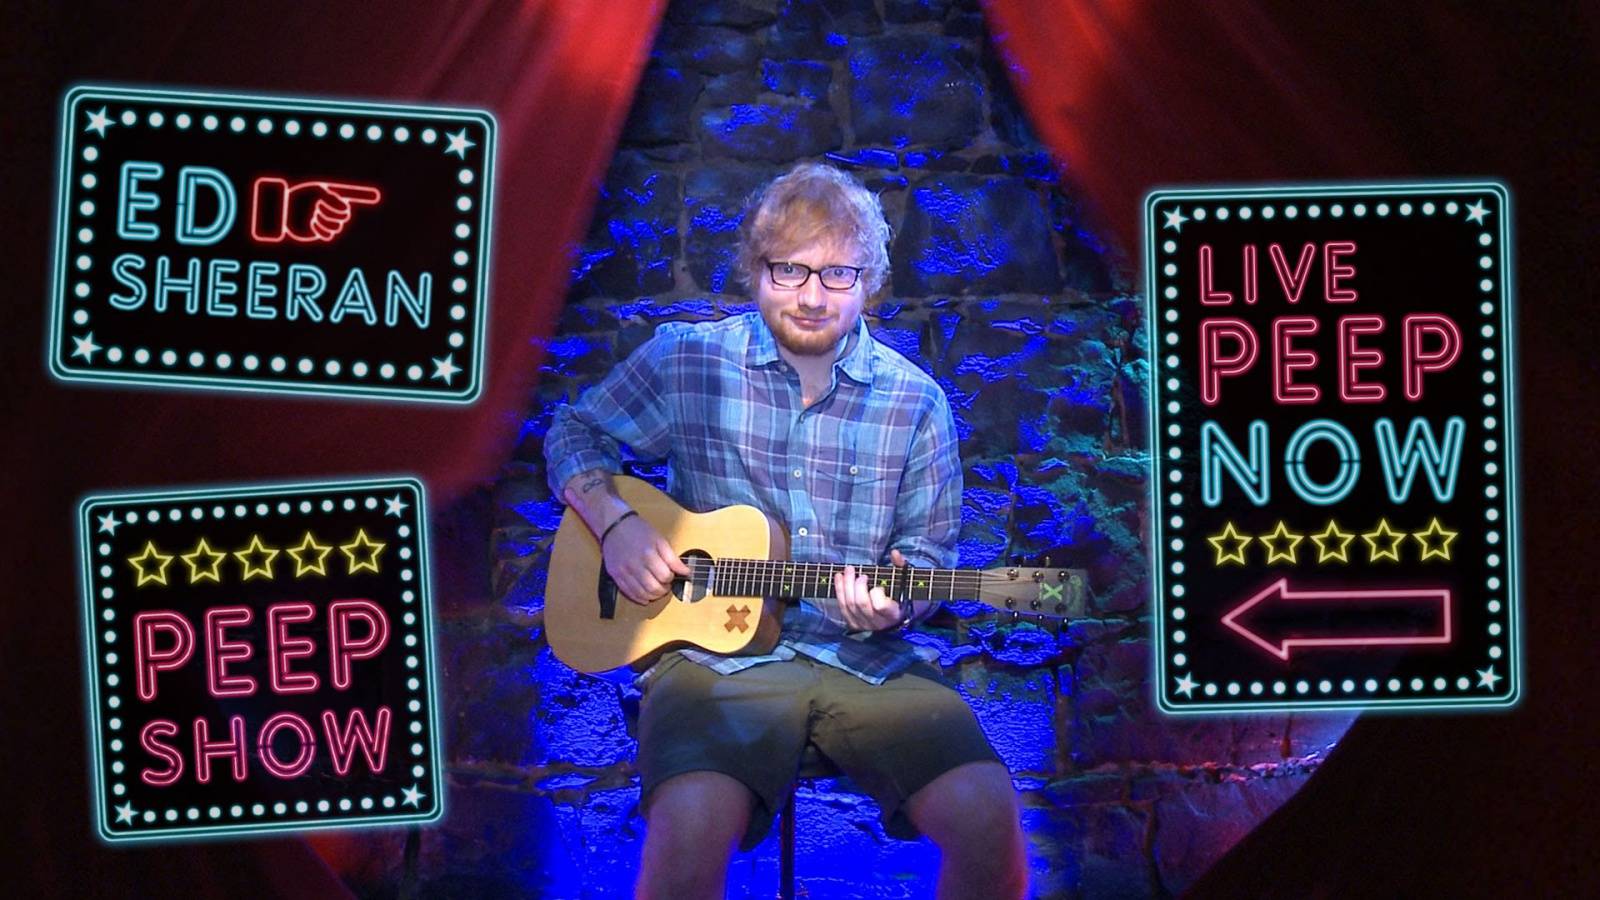 VIDEO: Ed Sheeran vystoupil v peep show! K mání byl za 2 dolary